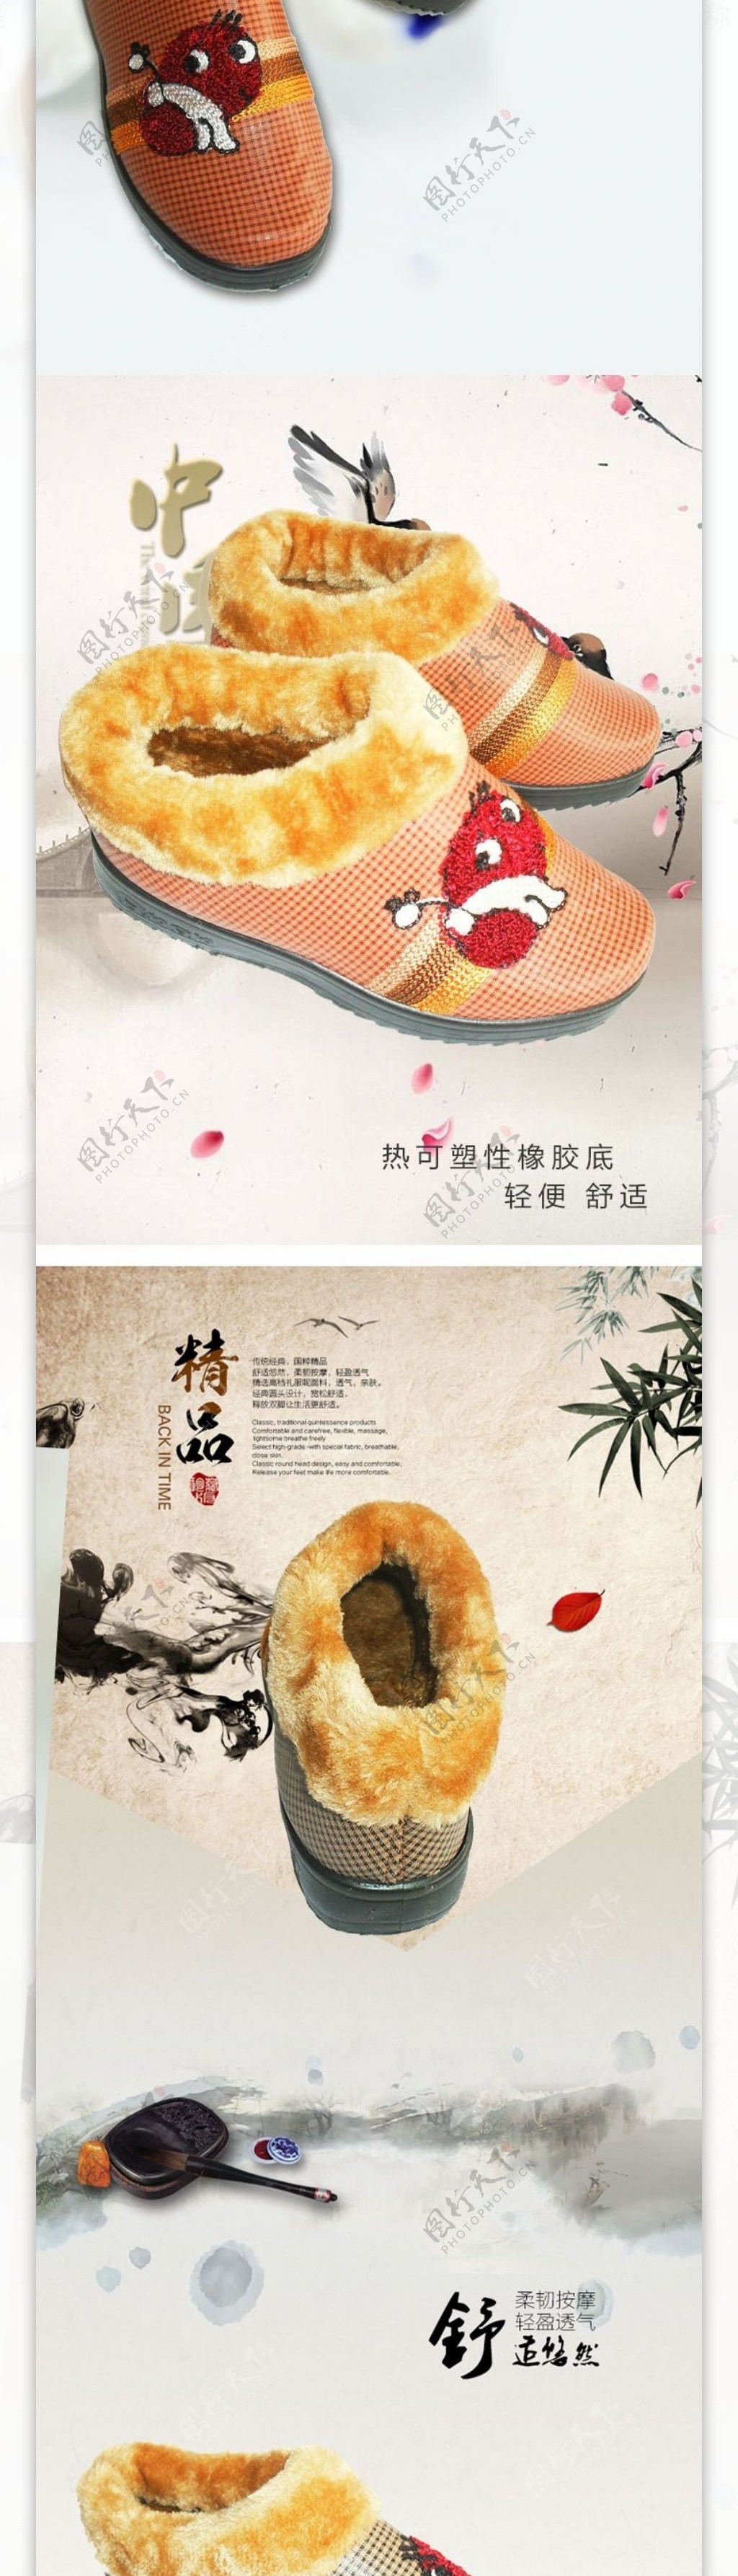 小朱设计策划北京市鞋淘宝店铺详情页